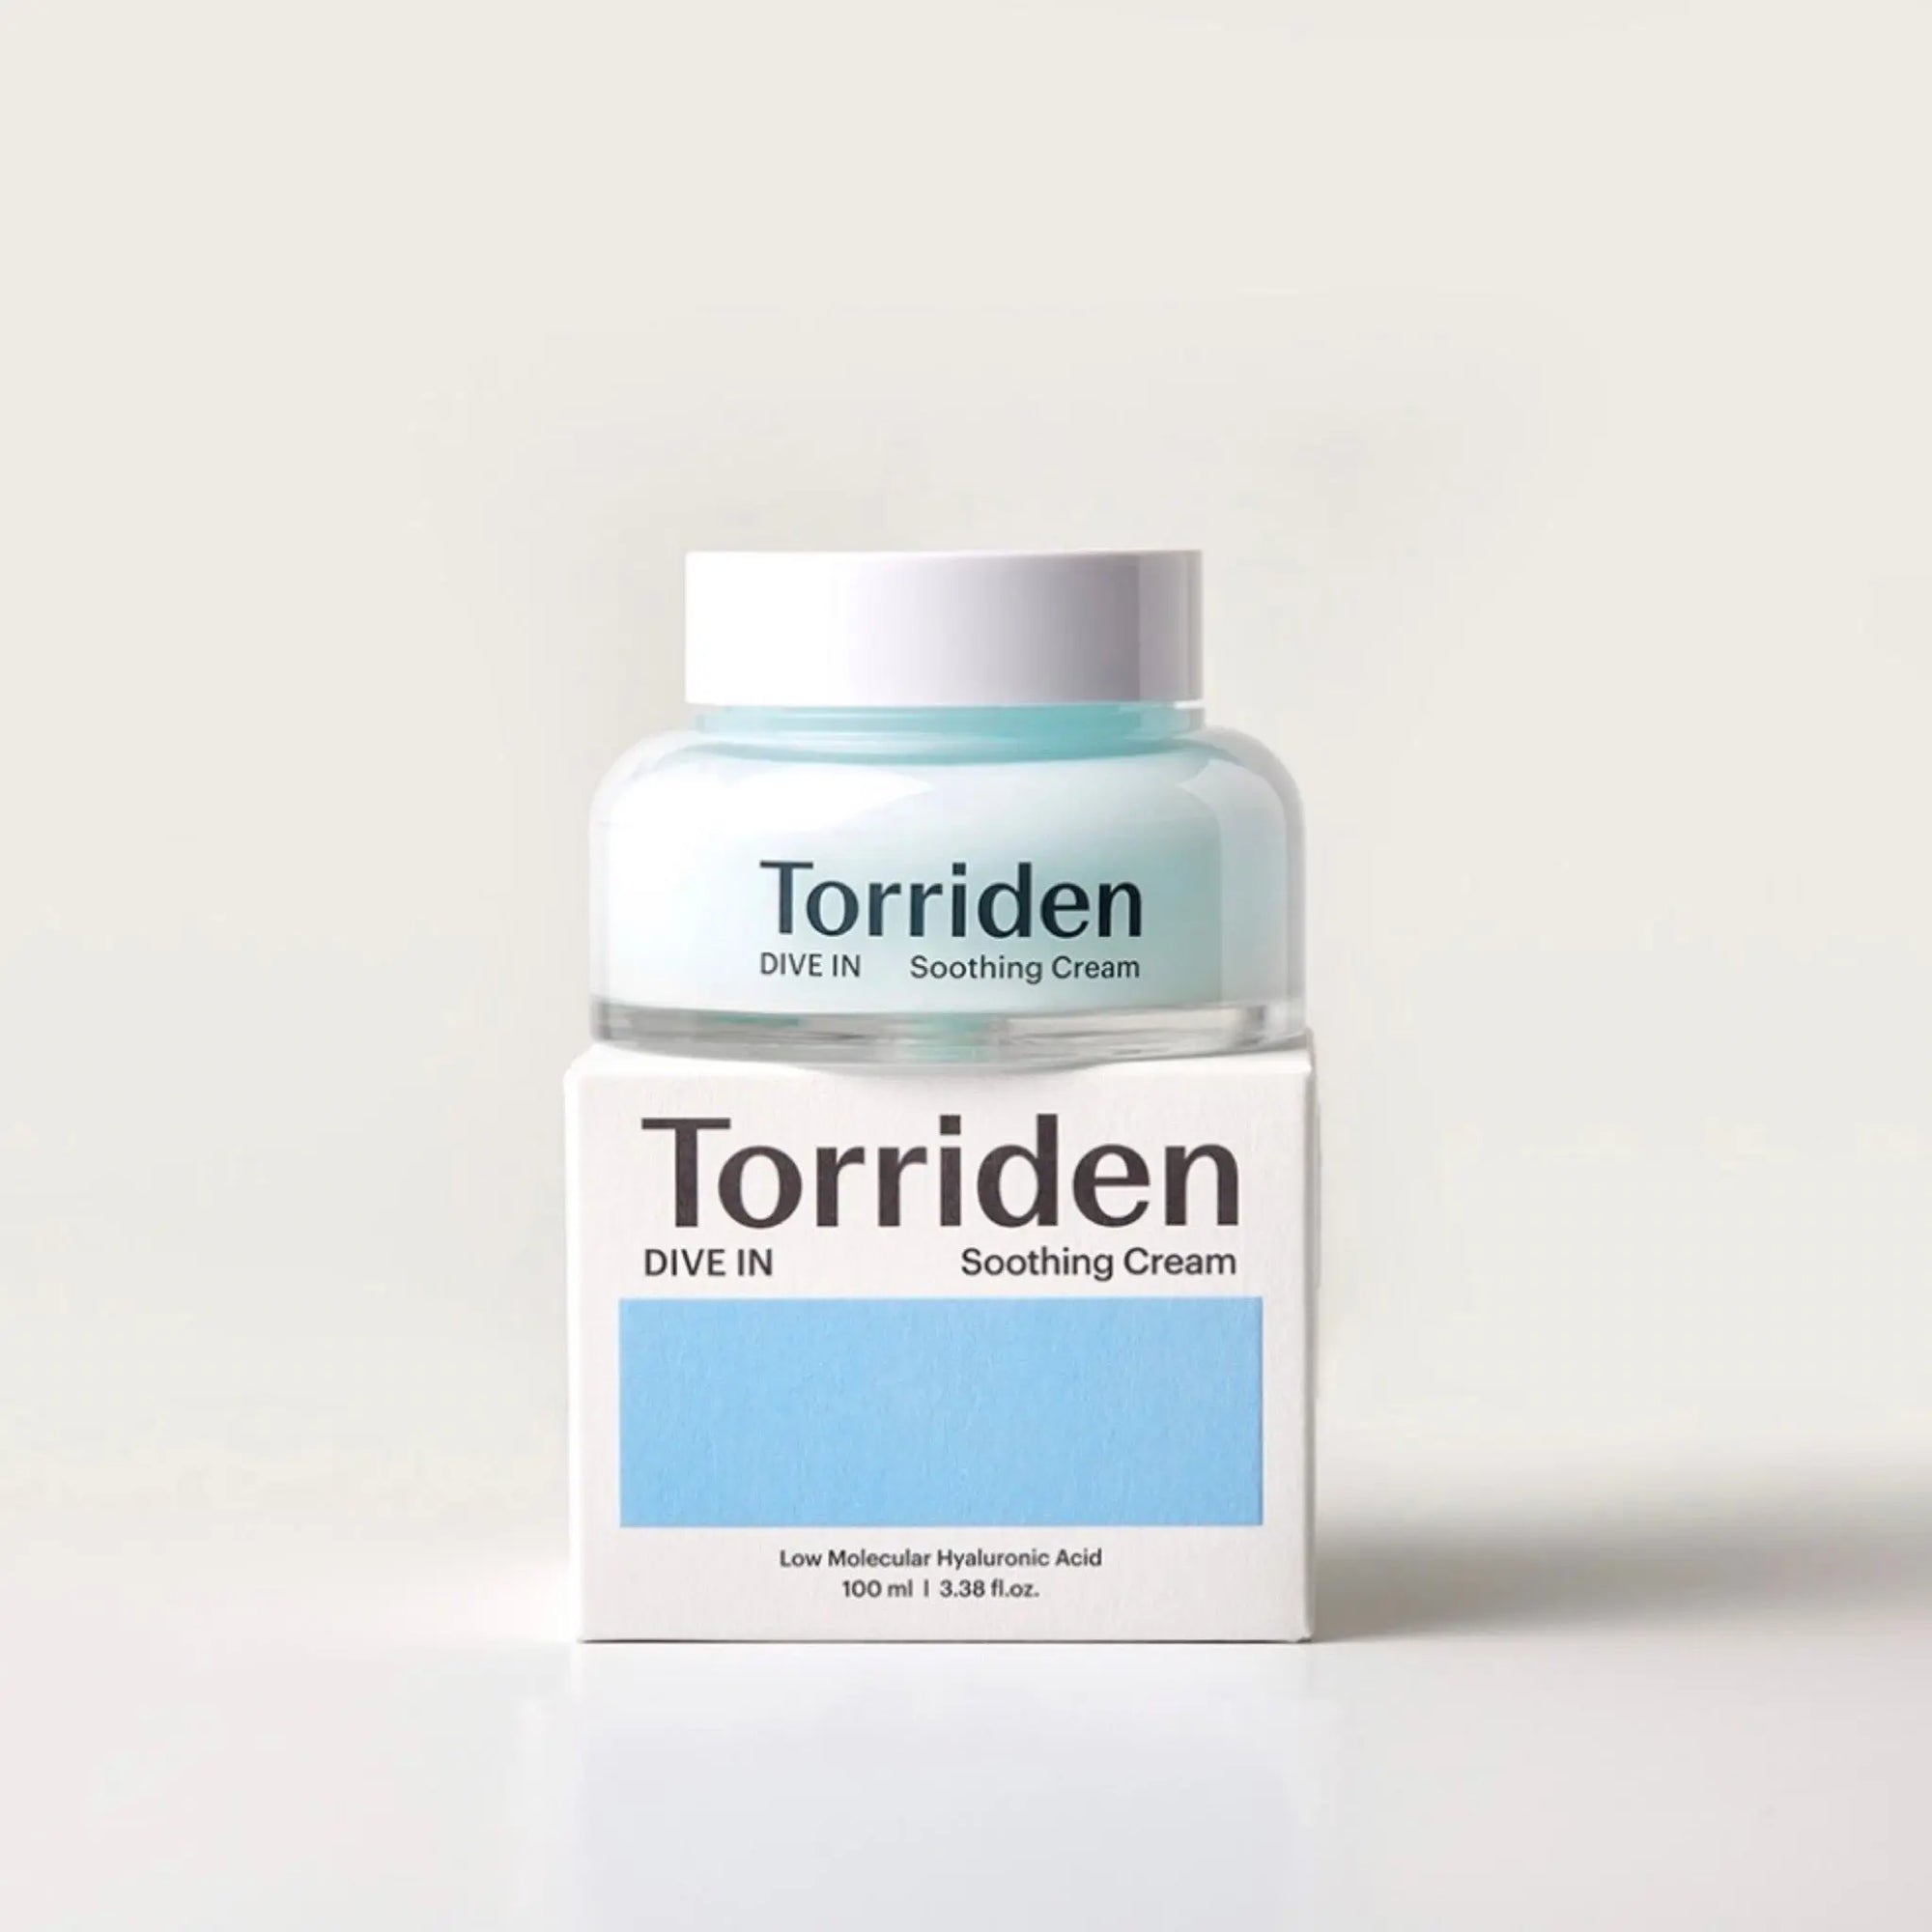 Torriden - Dive-In Low Molecular Hyaluronic Acid Soothing Cream 100mL Torriden